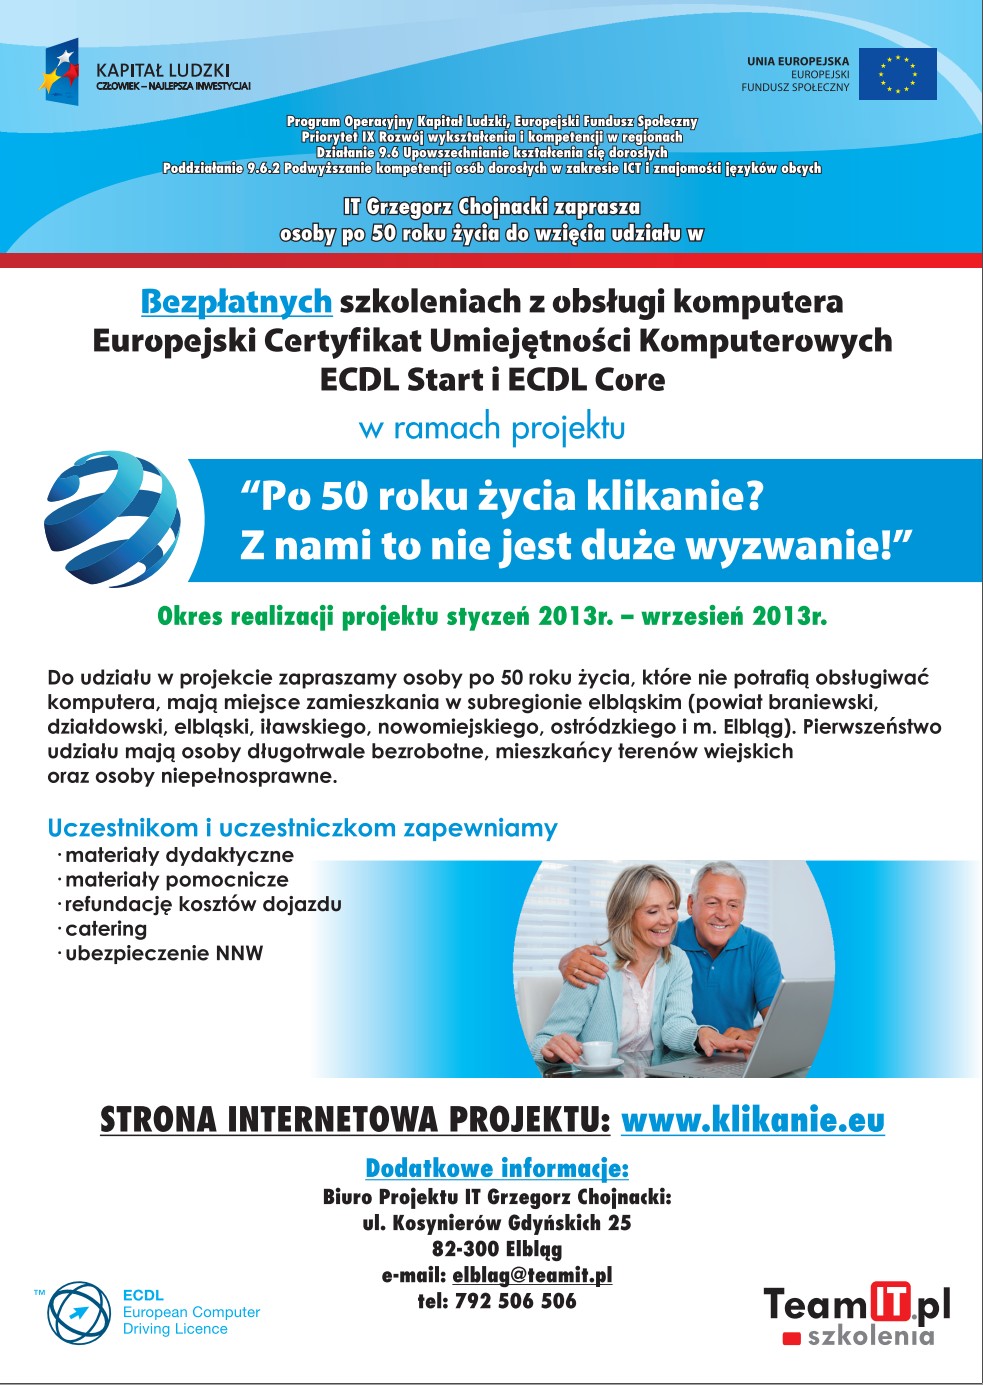 Plakat informujący o szkoleniu "IT Grzegorz Chojnacki zaprasza osoby po 50 roku życia do wzięcia udziału w bezpłatnych szkoleniach z obsługi komputera Europejski Certyfikat Umiejętności Komputerowych ECDL Start i ECDL Core"